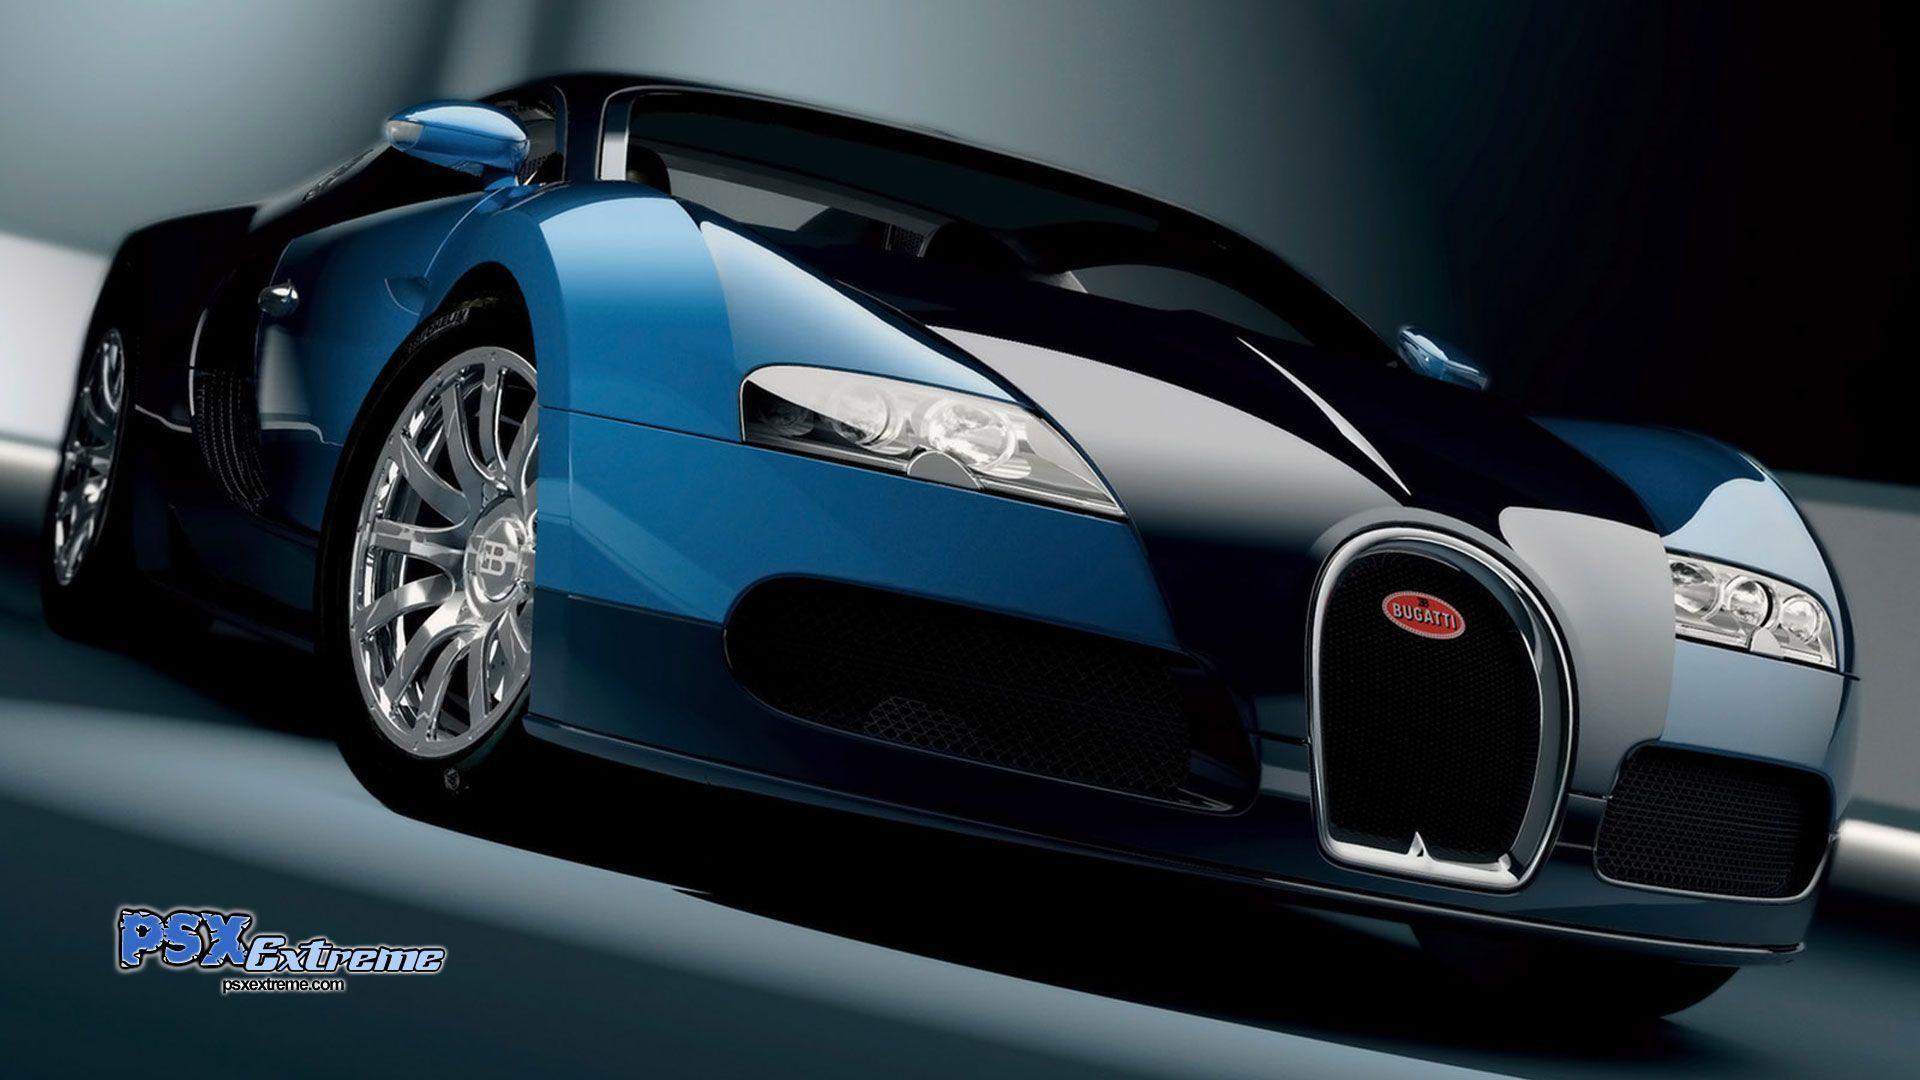 Fonds d&;écran Bugatti Veyron, tous les wallpaper Bugatti Veyron